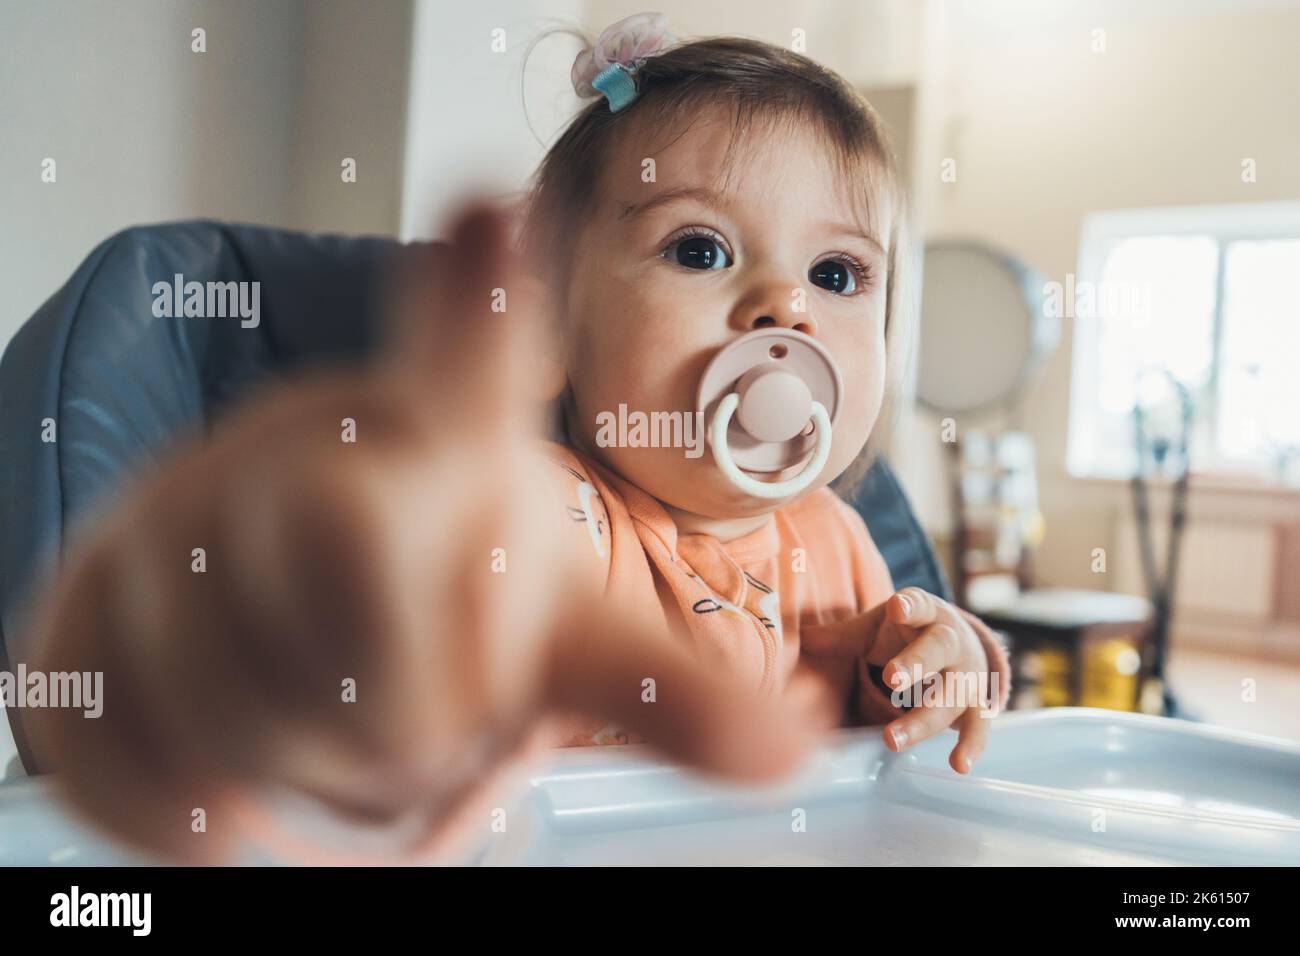 Une jeune fille heureuse assise sur une chaise haute pour nourrir les enfants sucer la sucette et pointer vers l'appareil photo avec son doigt, a détecté quelque chose Banque D'Images